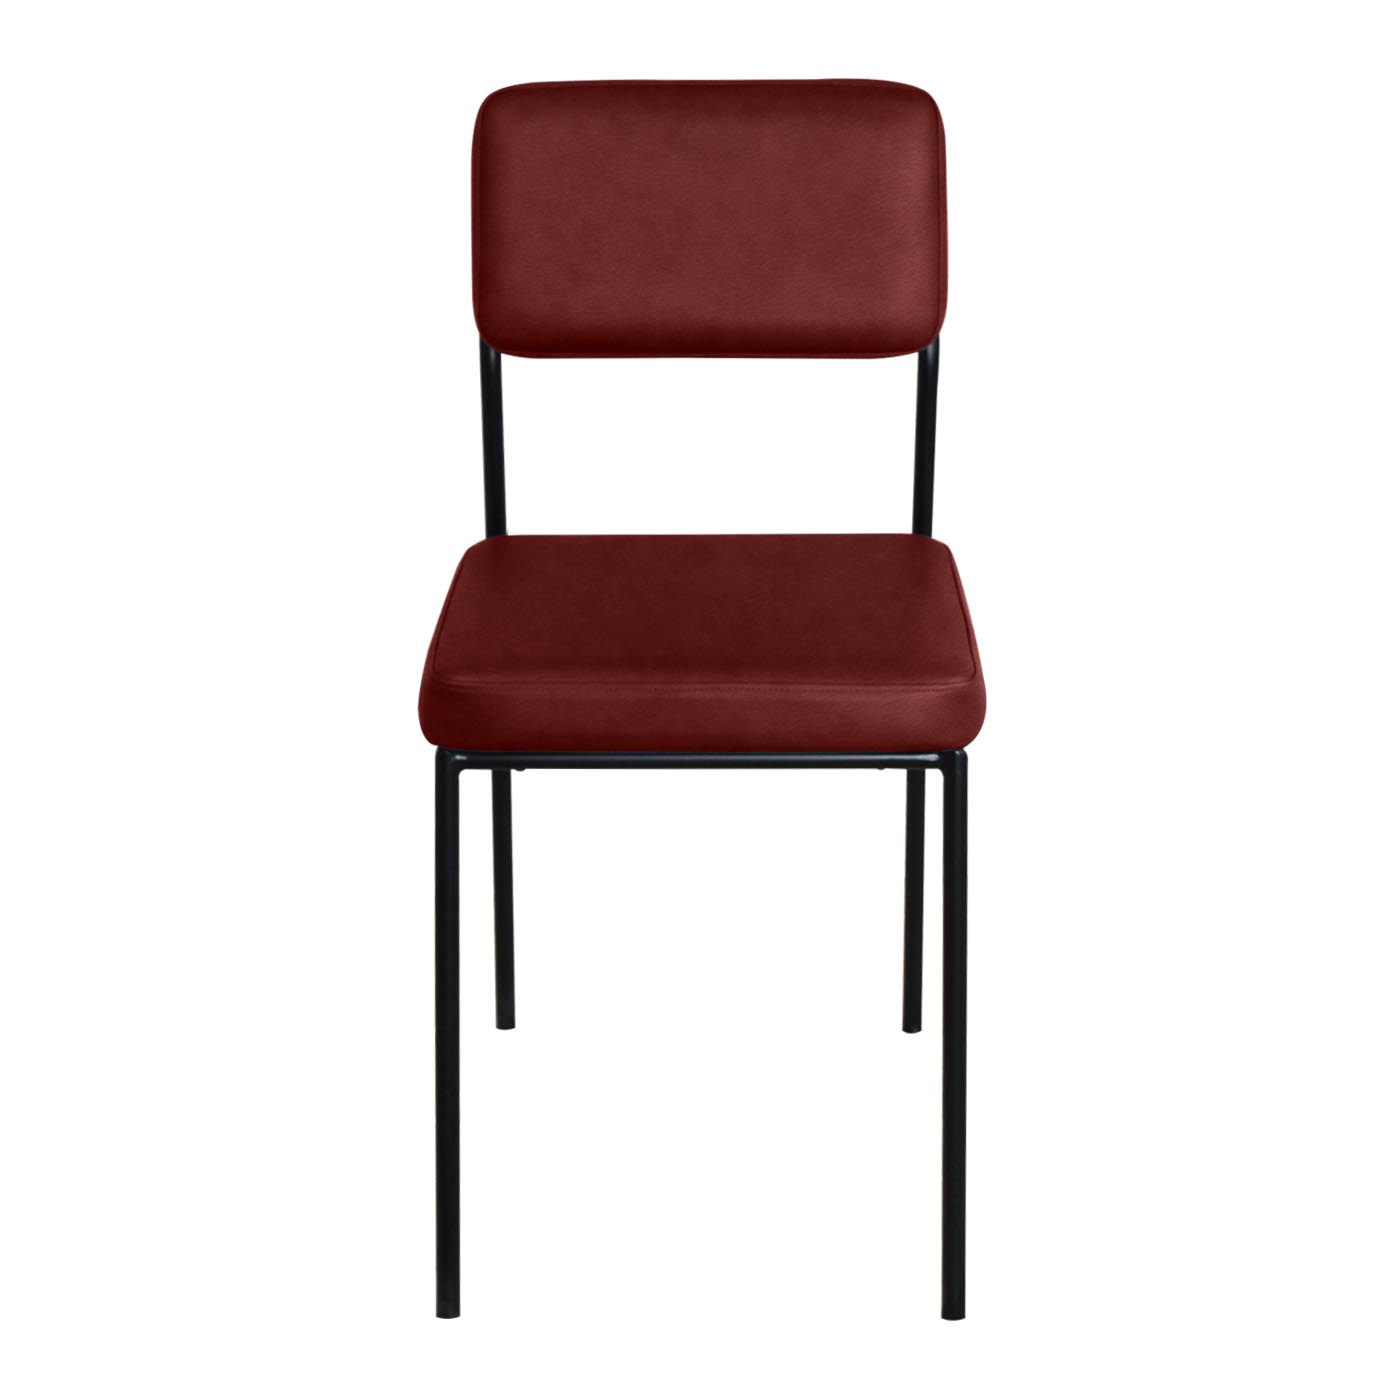 Dessau Maroon Chair